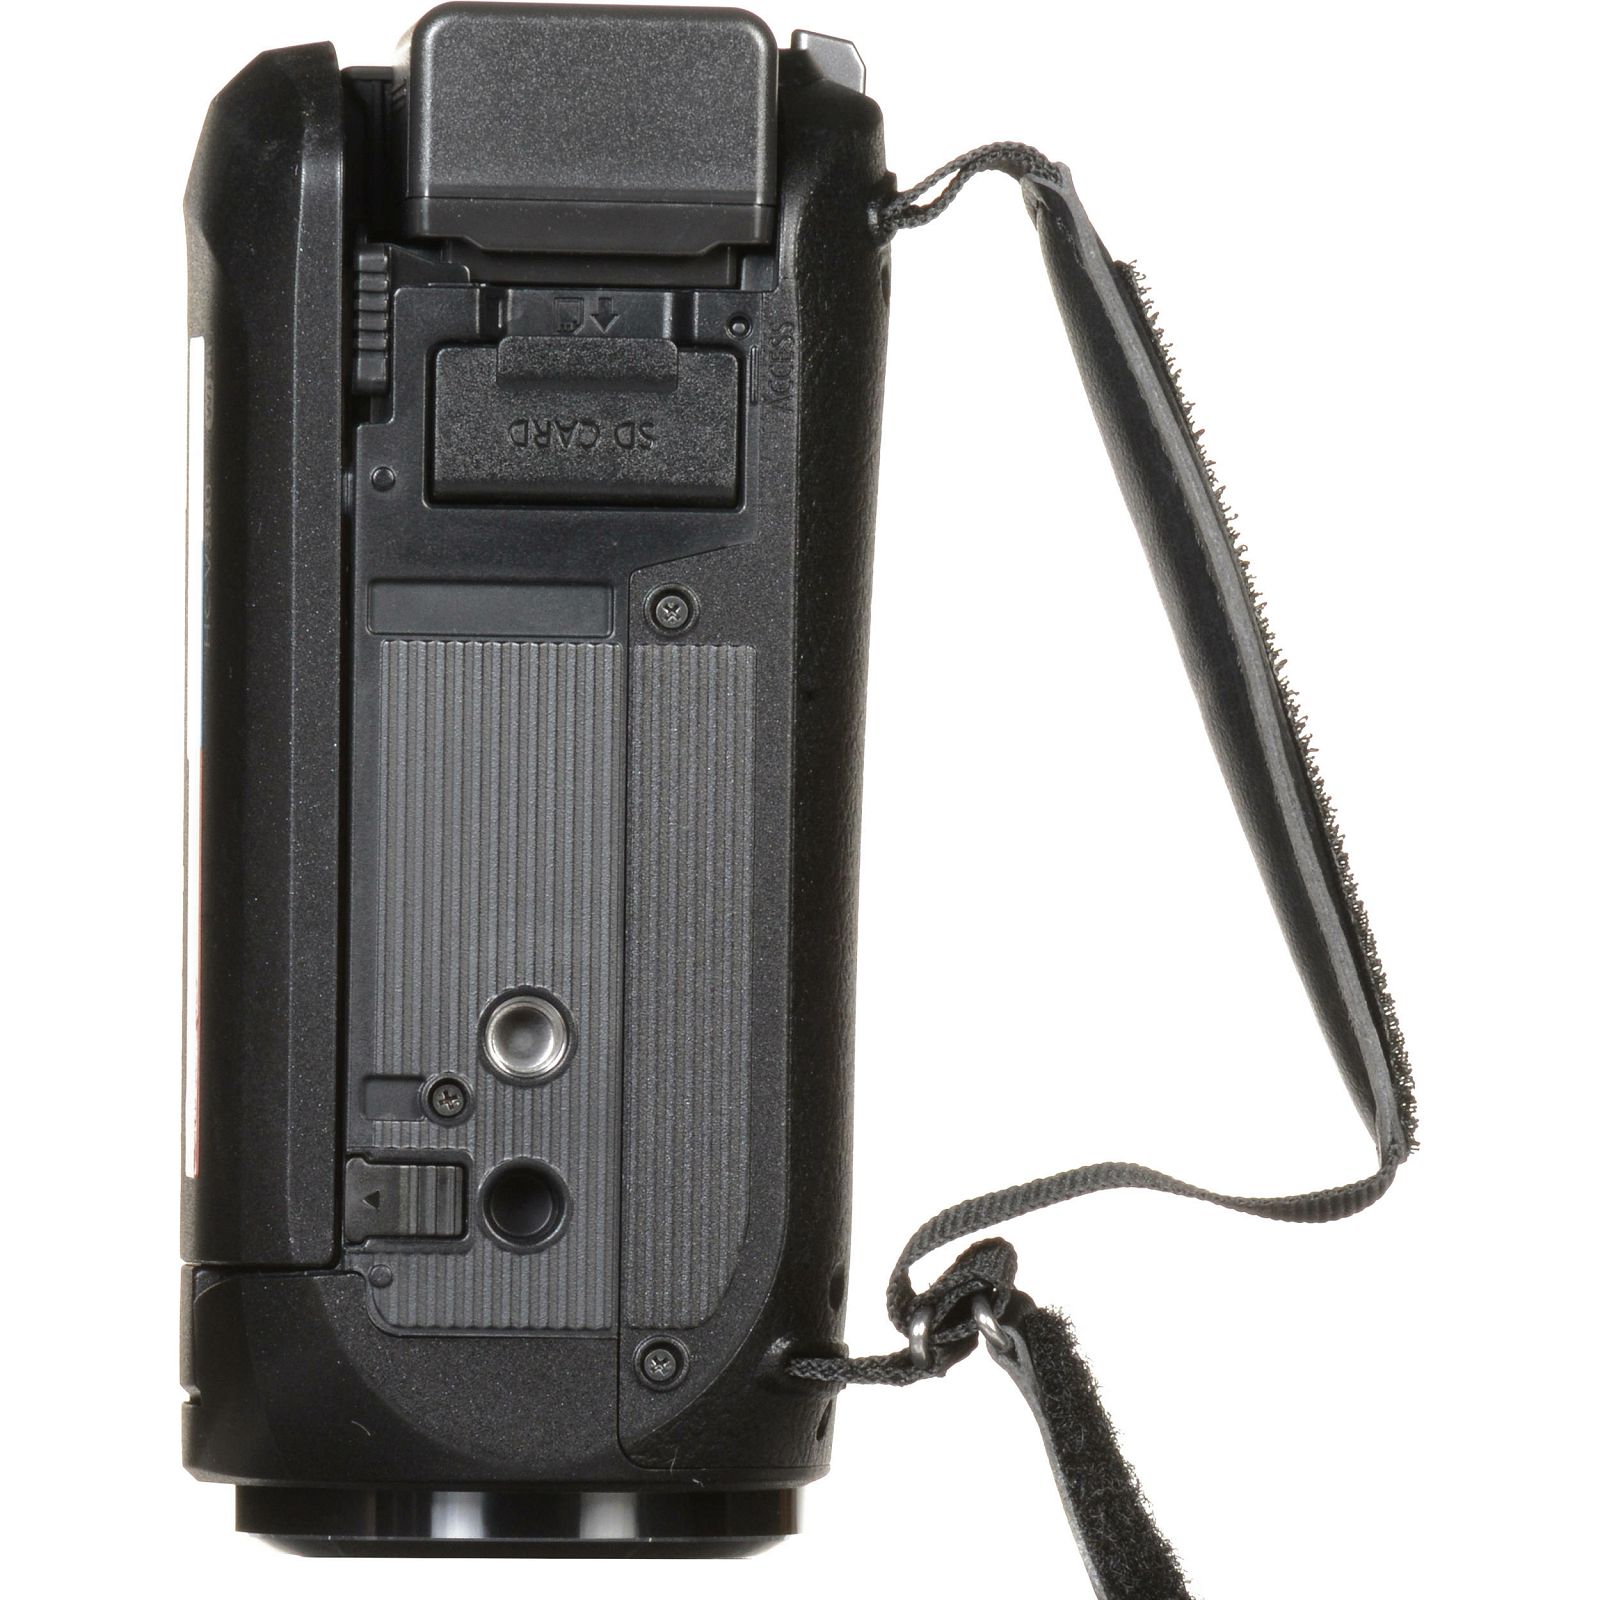 Panasonic HC-V380 Full HD Camcorder Digitalna kompaktna video kamera kamkorder HC-V380EP (HC-V380EP-K)